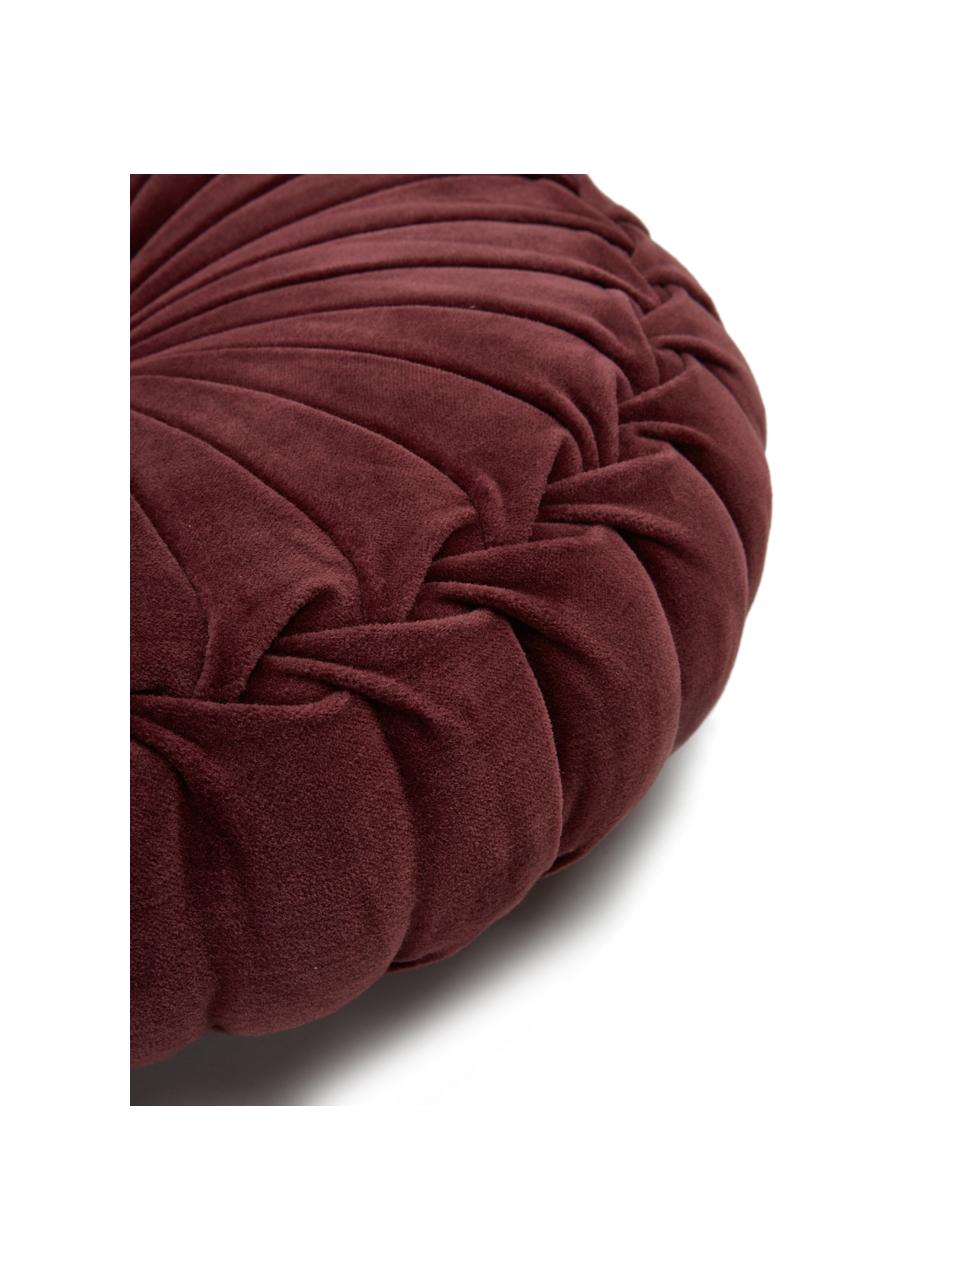 Cuscino rotondo imbottito in velluto con volant Kanan, Rivestimento: 100% velluto di cotone, Rosso vino, Ø 40 cm